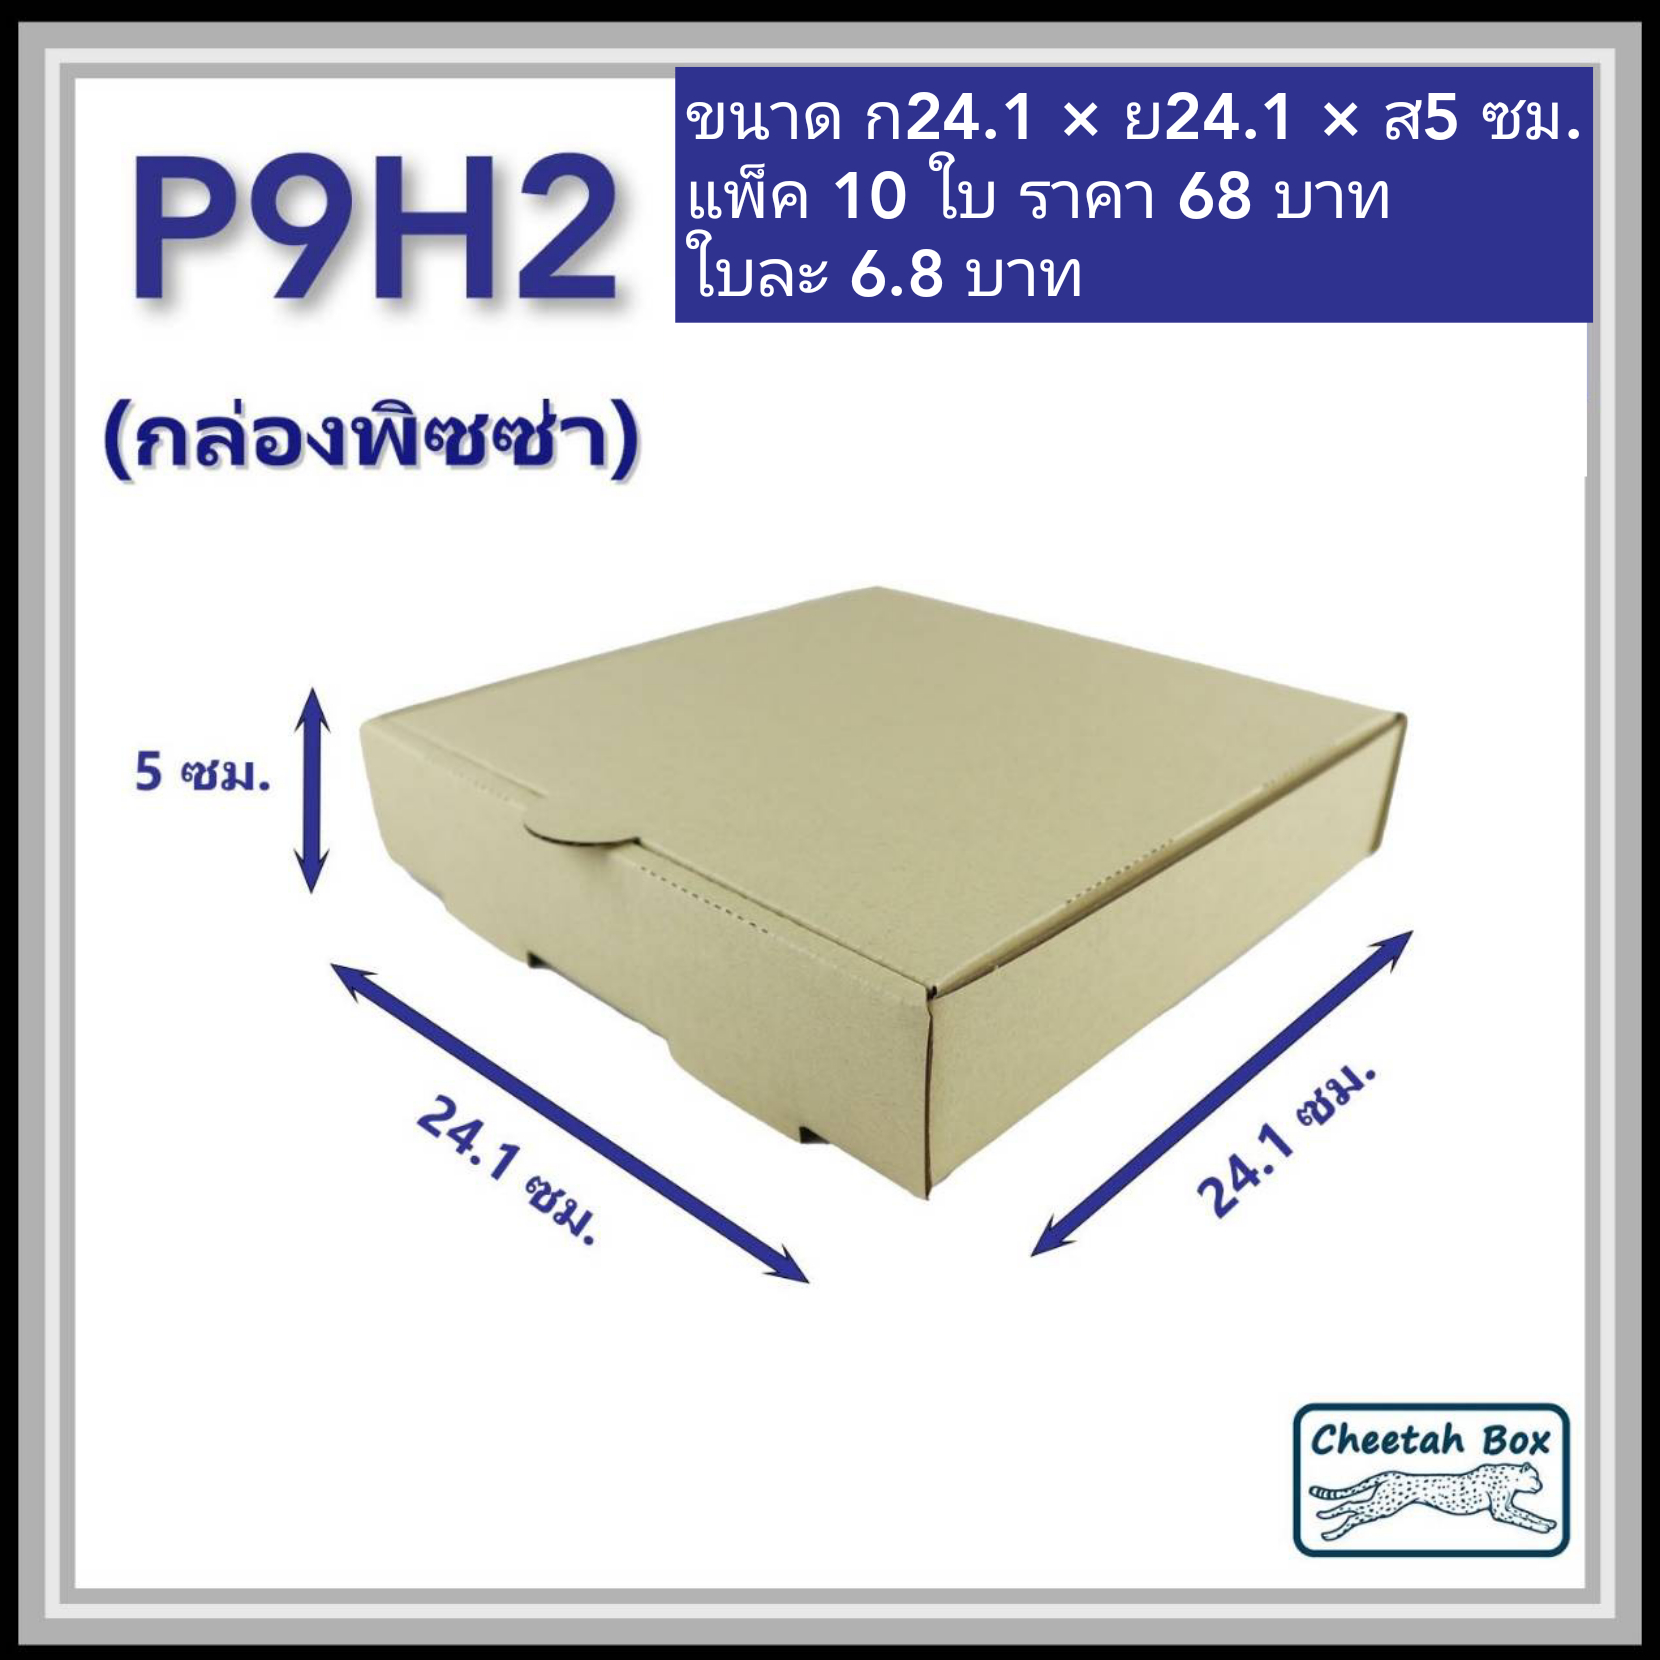 กล่องพิซซ่า 9 นิ้วสูง 2 นิ้ว รหัส P9H2 ไม่พิมพ์ (Pizza Box) ขนาด 24.1W x 24.1L x 5H cm.